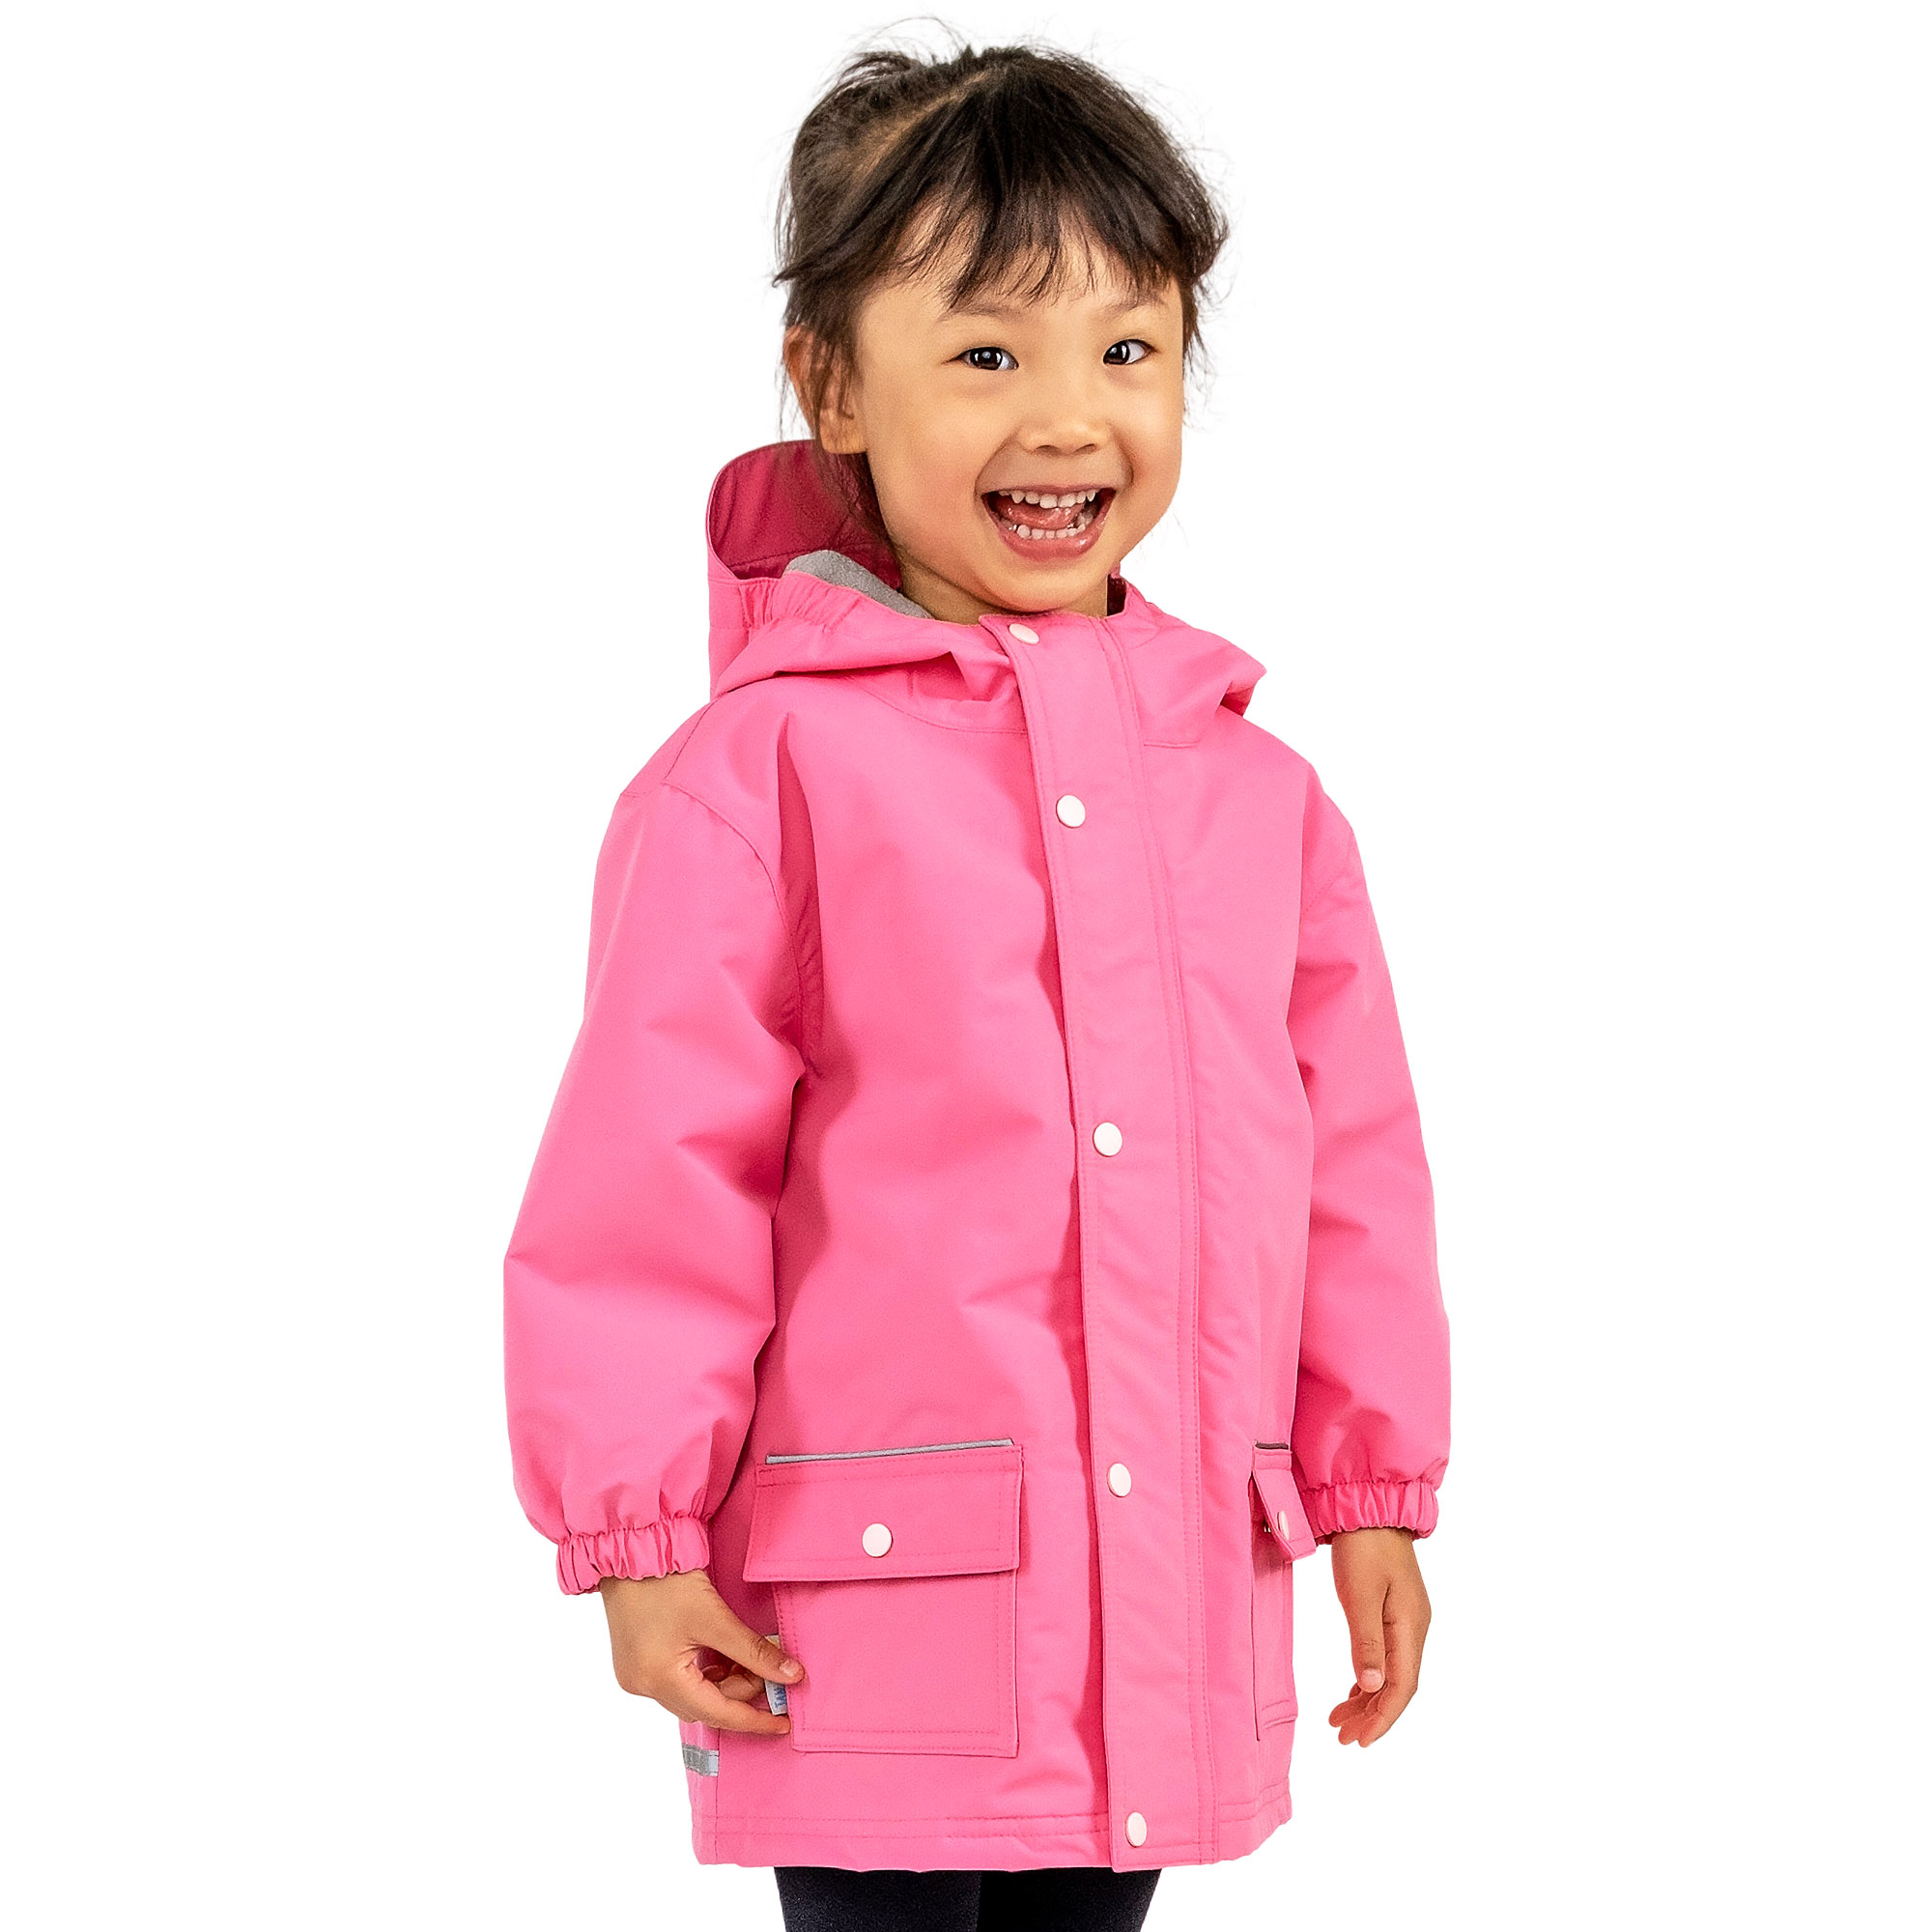 Kids Fleece Lined Rain Jackets | Watermelon Pink Waterproof | Jan & Jul